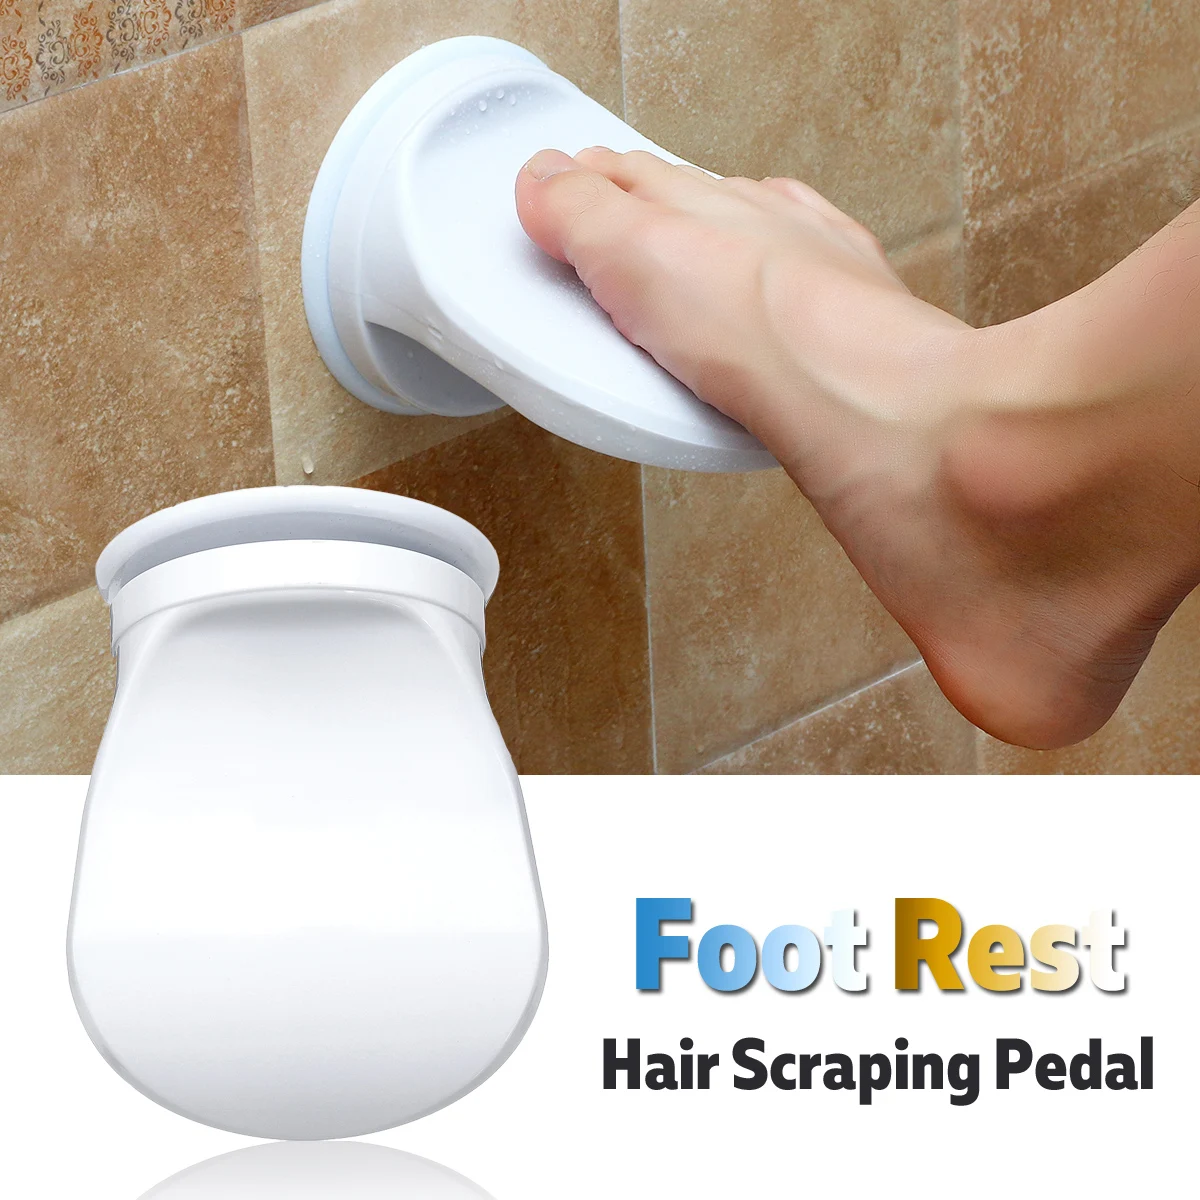 Ванная комната душ для ног бритье Ноги шаг помощь ручка держатель педаль шаг присоска Нескользящая педаль для ног мыть ноги